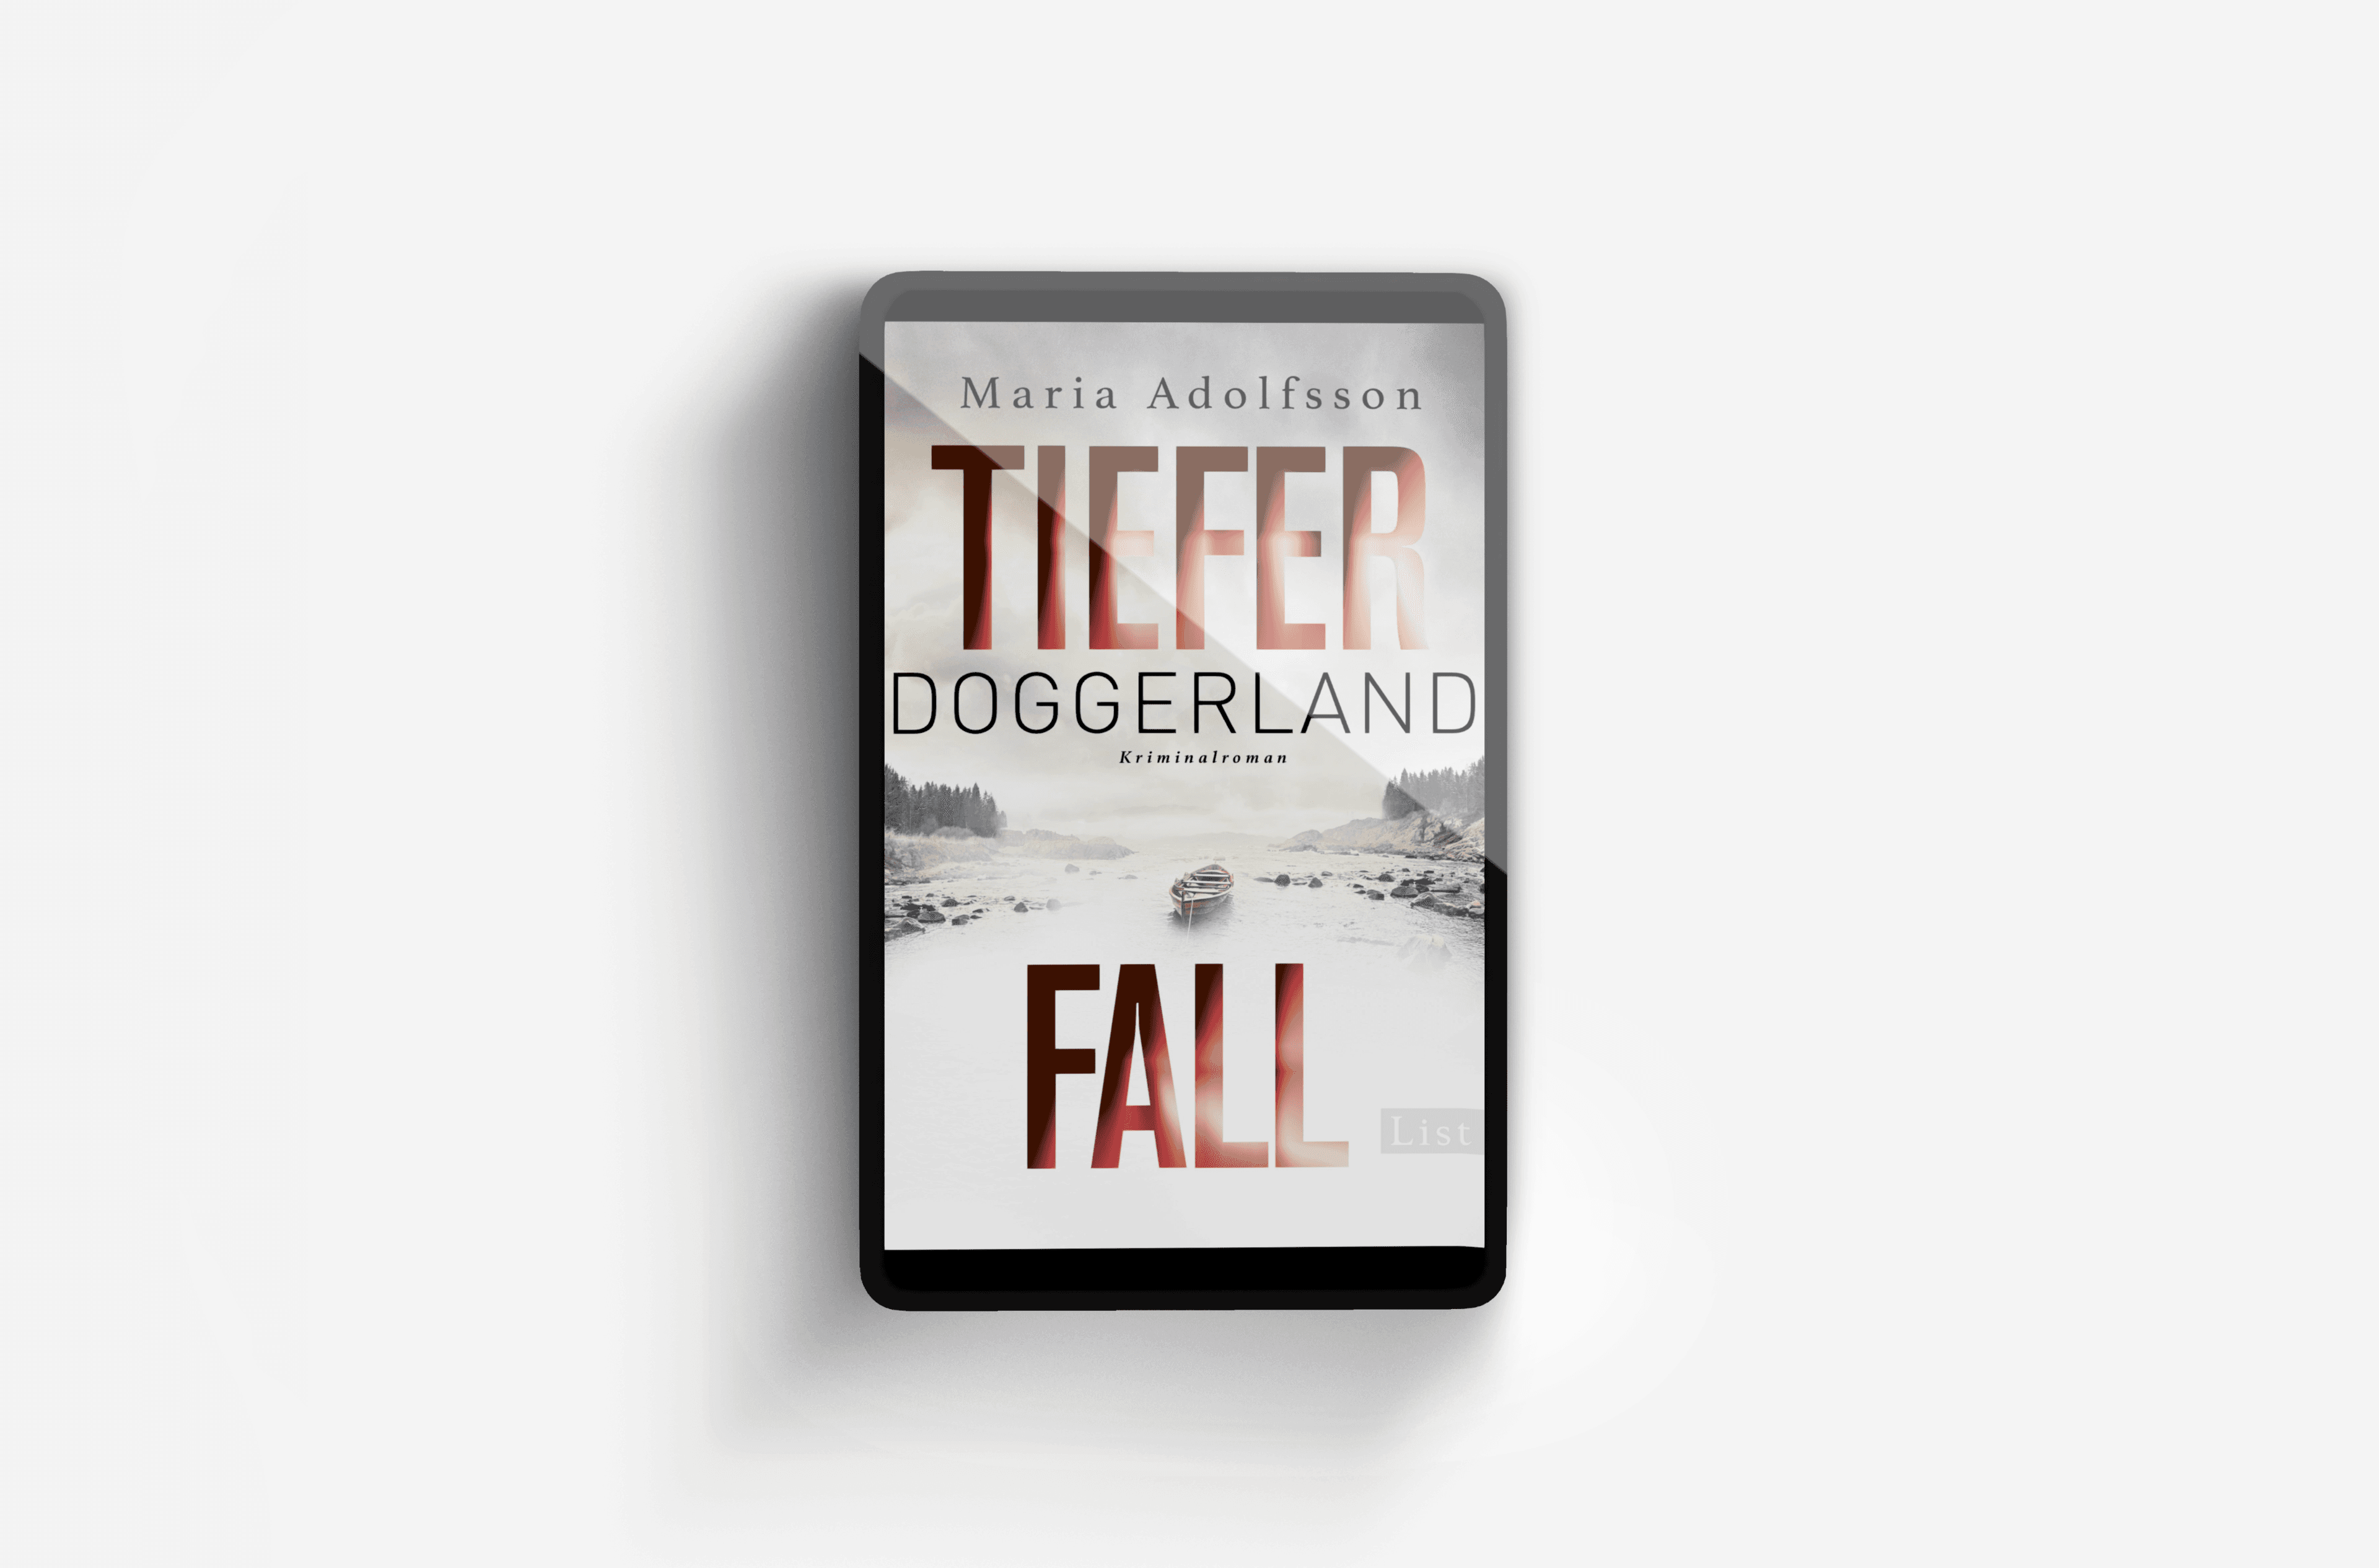 Buchcover von Doggerland. Tiefer Fall (Ein Doggerland-Krimi 2)